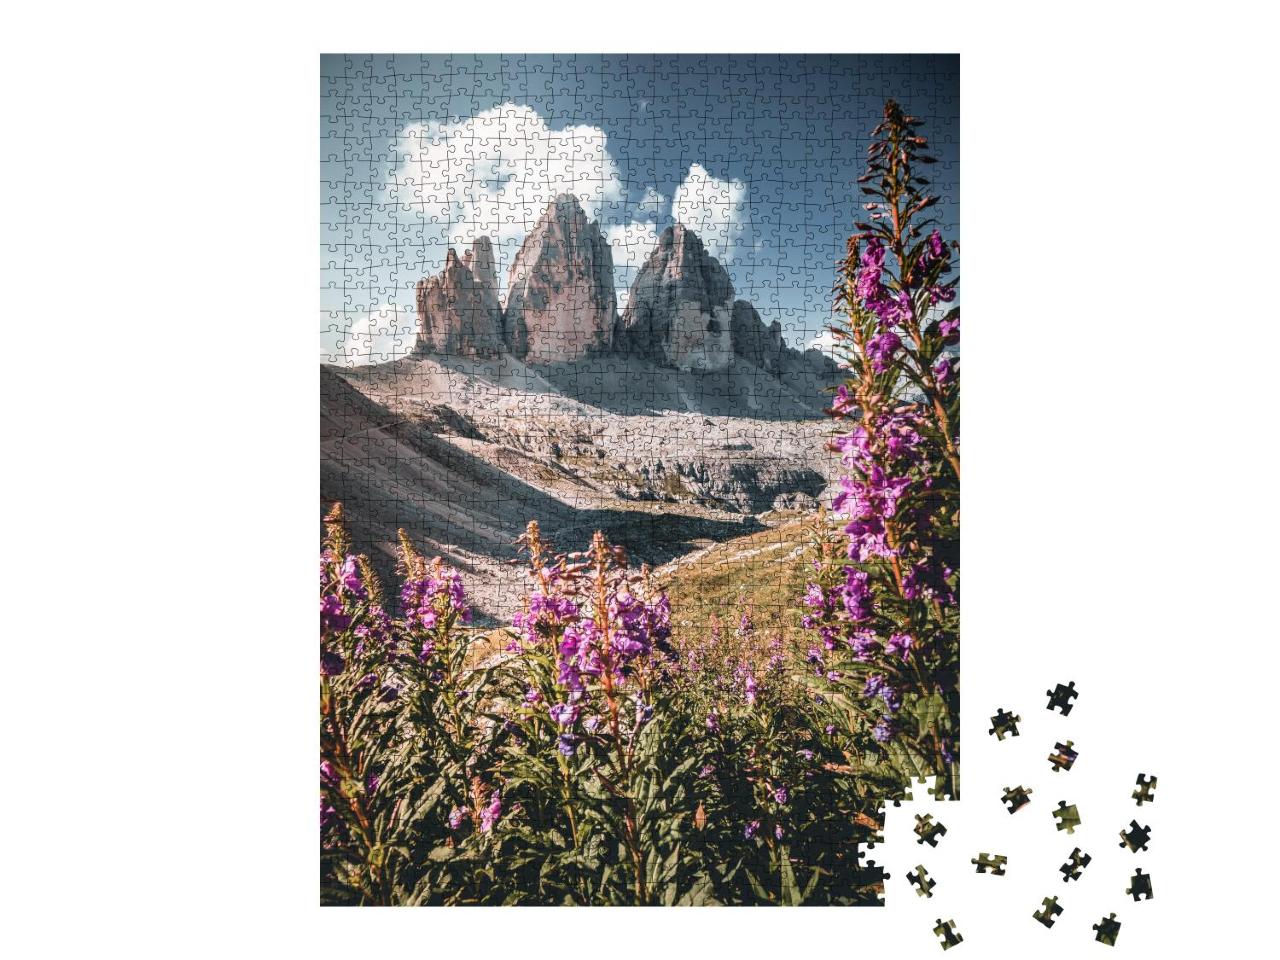 Puzzle 1000 Teile „Dolomiten Alpen, Drei Zinnen, Südtirol, Italien“